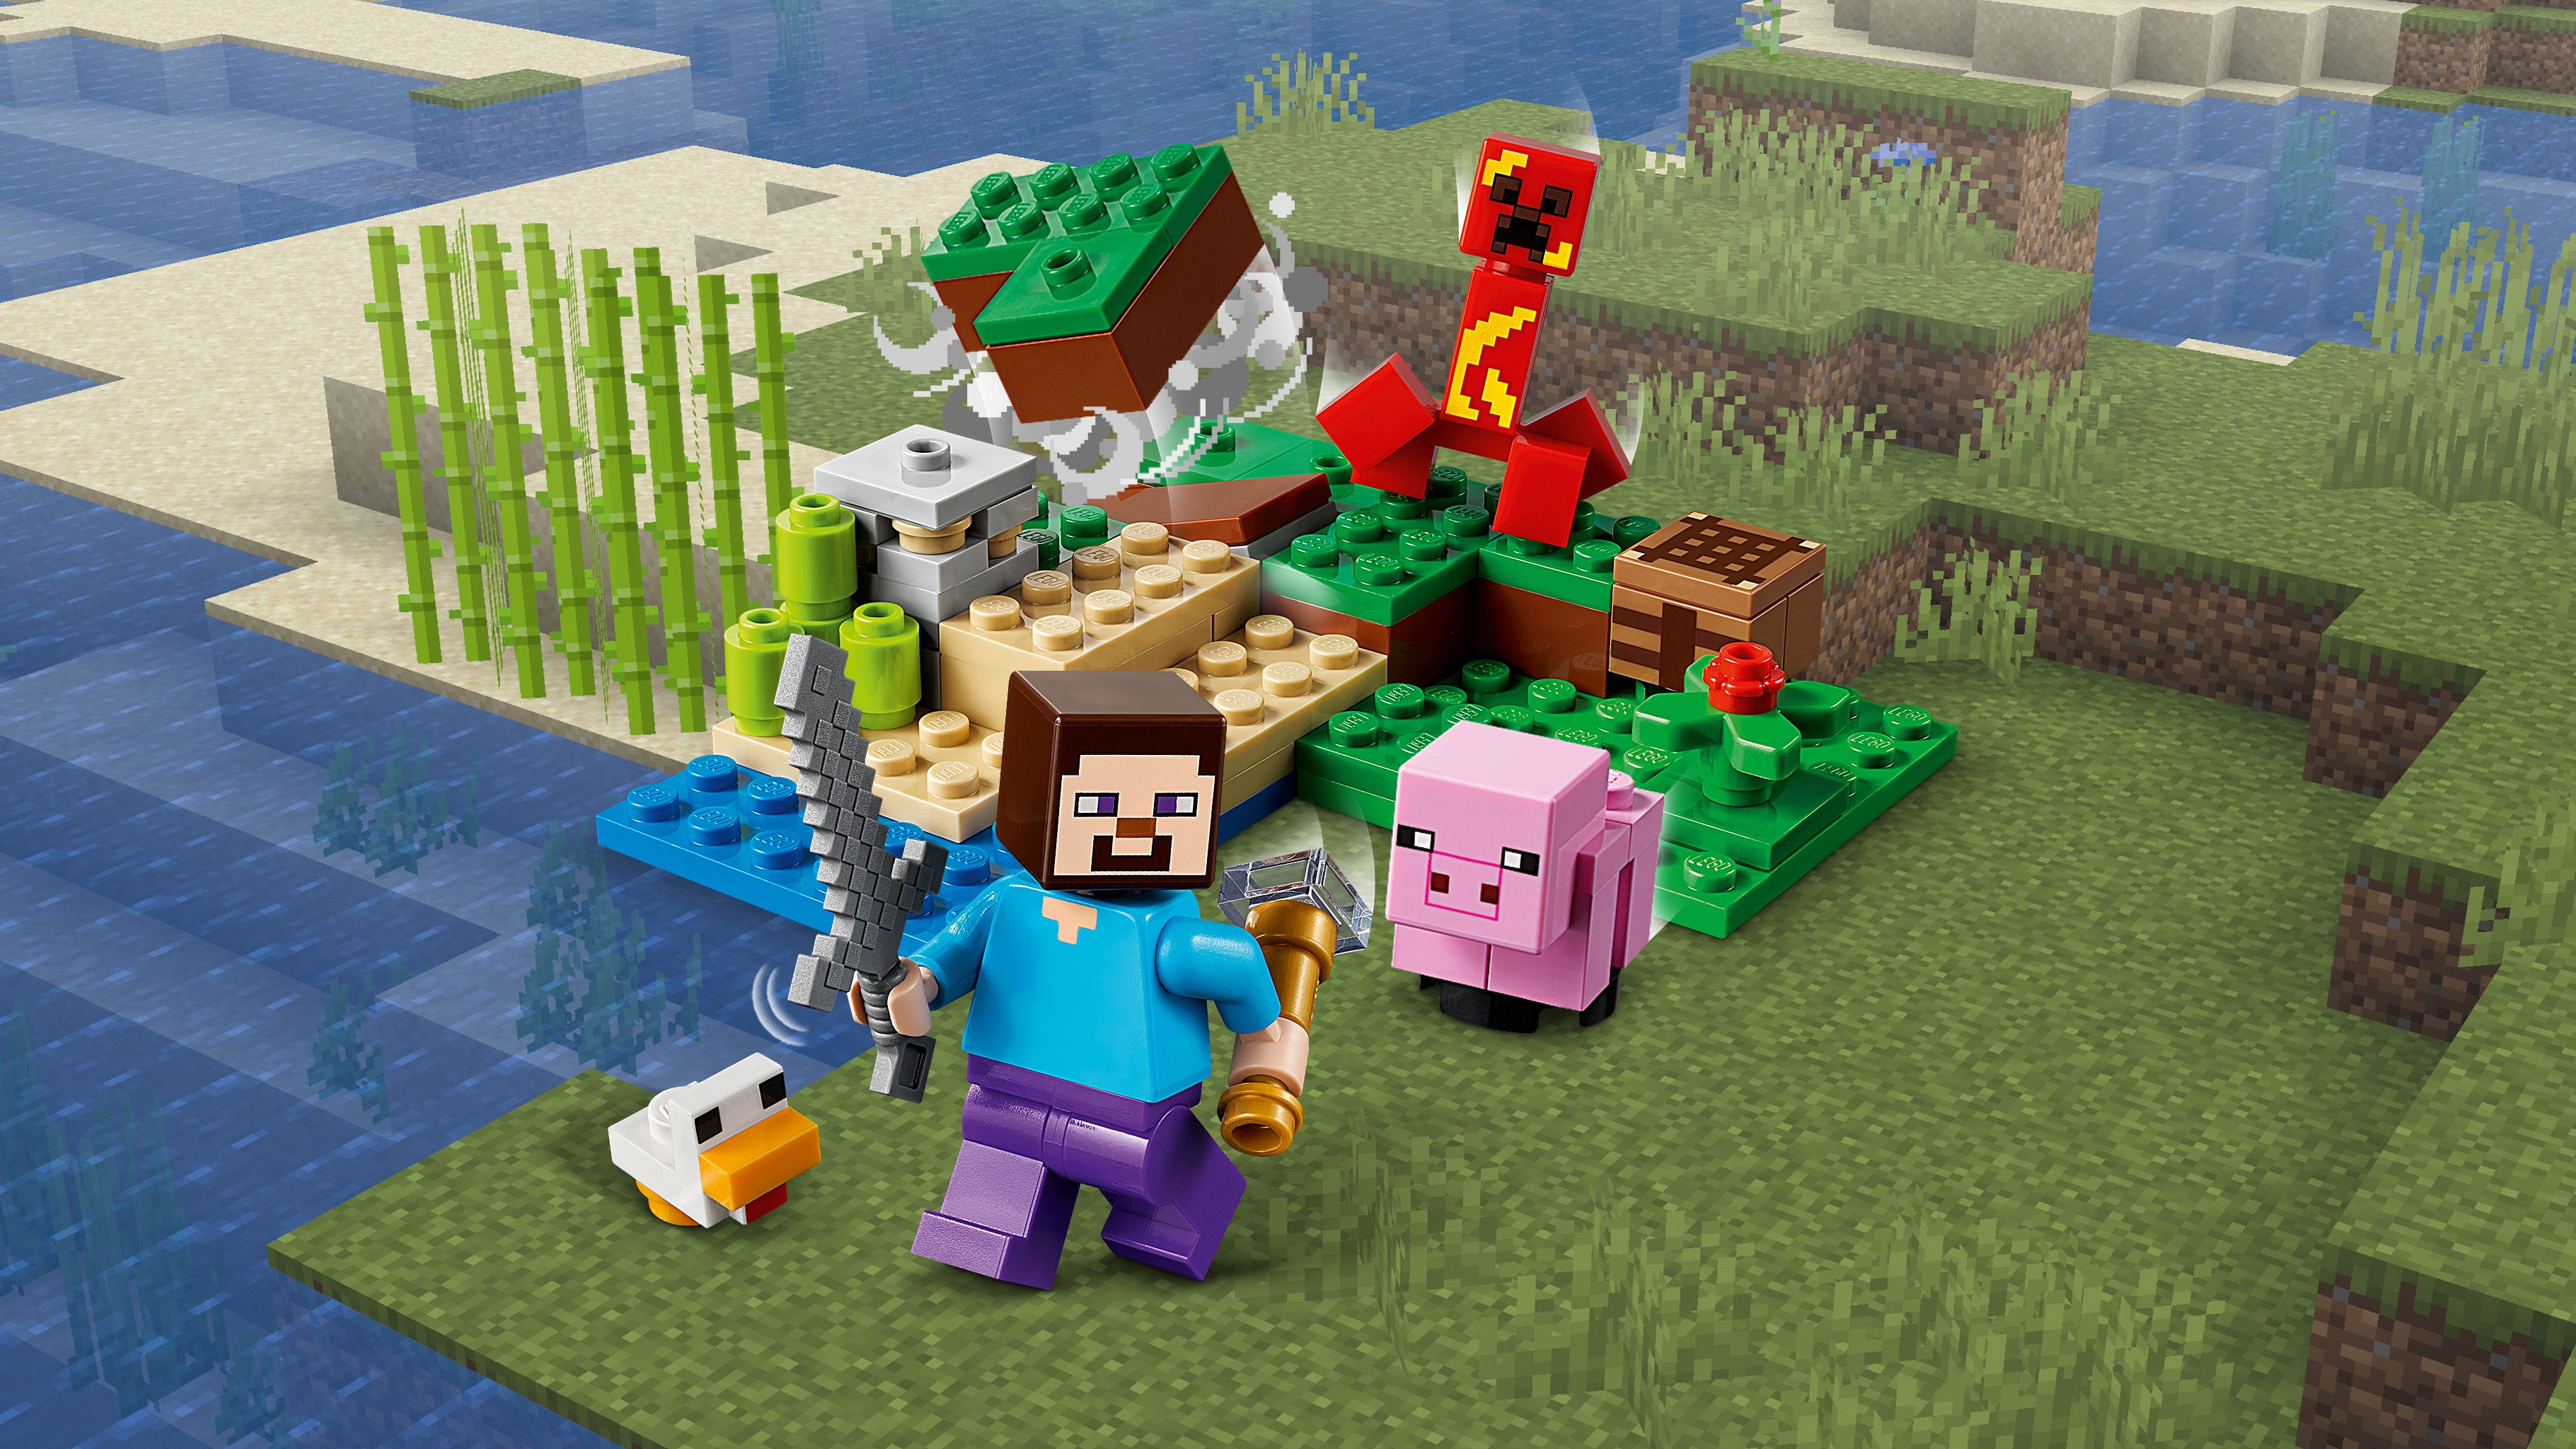 クリーパーとの対決 レゴ マインクラフト セット Lego Comキッズ